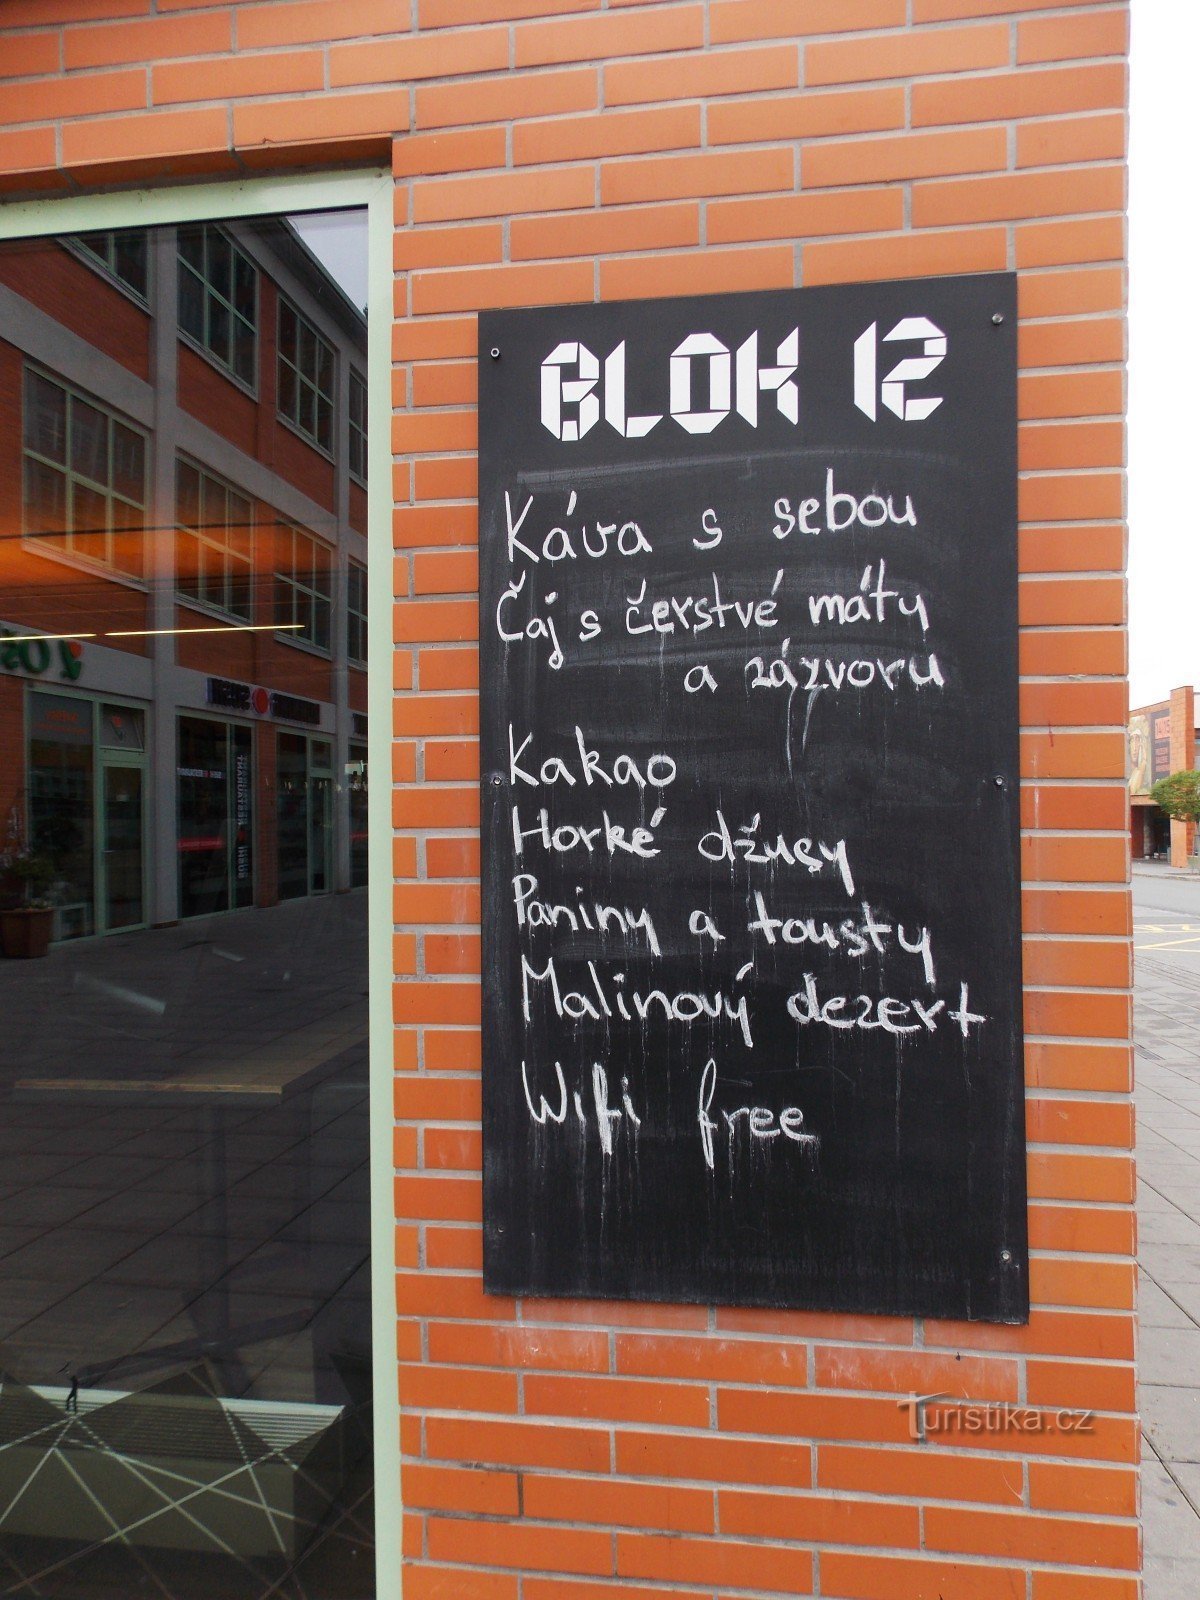 Dừng chân tại Blok 12 Café ở trung tâm Zlín